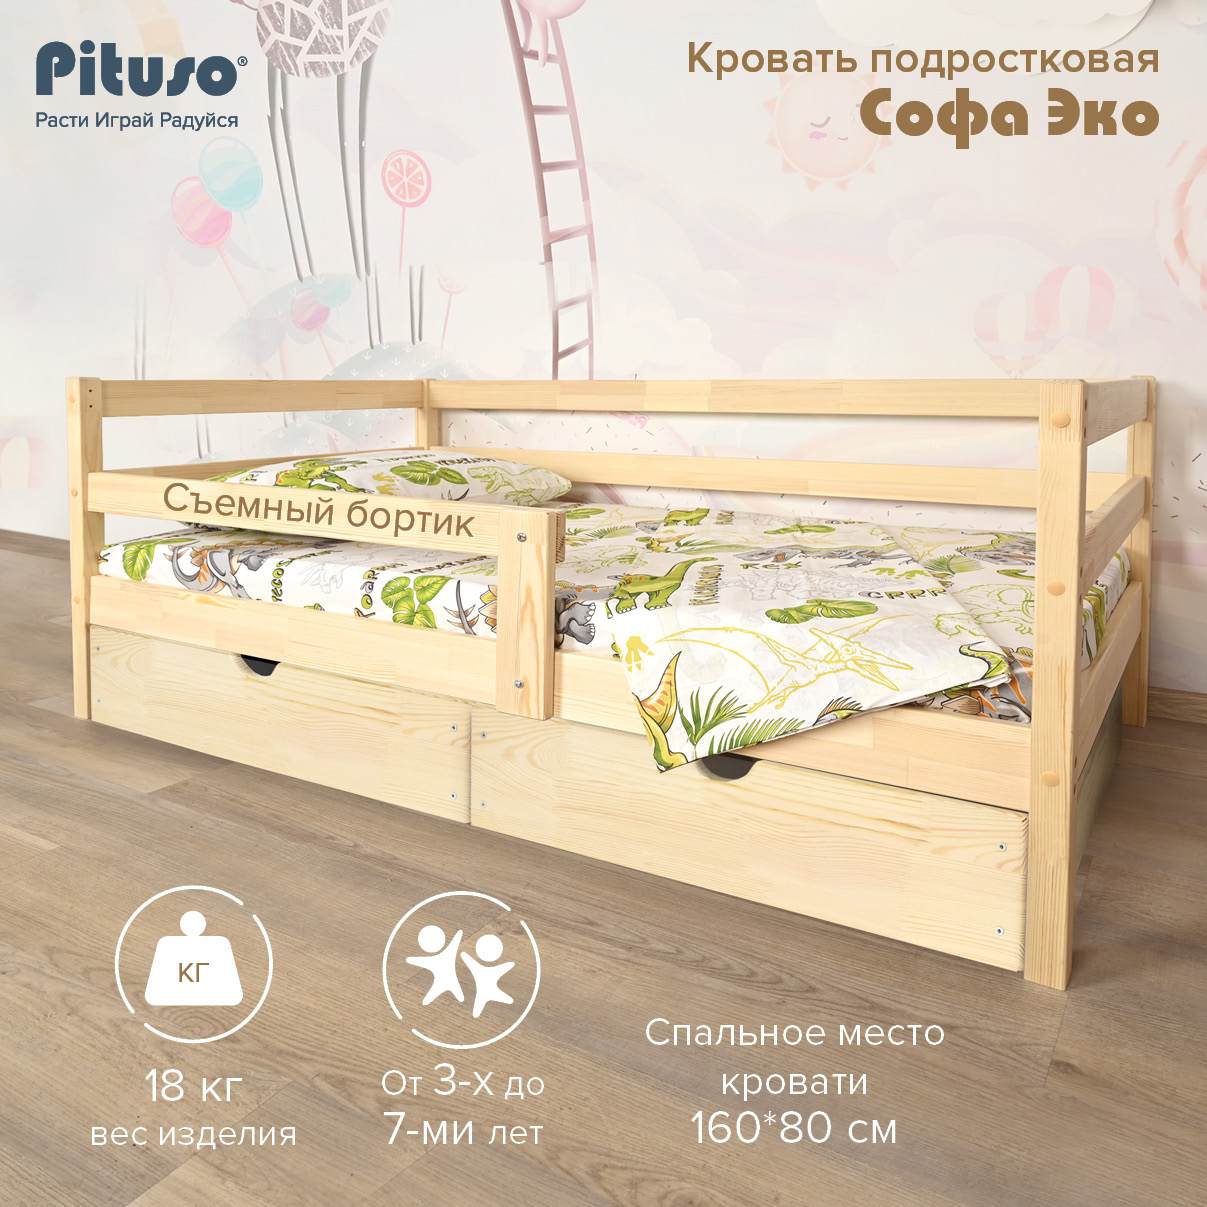 Кровать Подростковая Pituso Софа Эко Натуральный кровать подростковая edwood любаша 140х70 натуральный